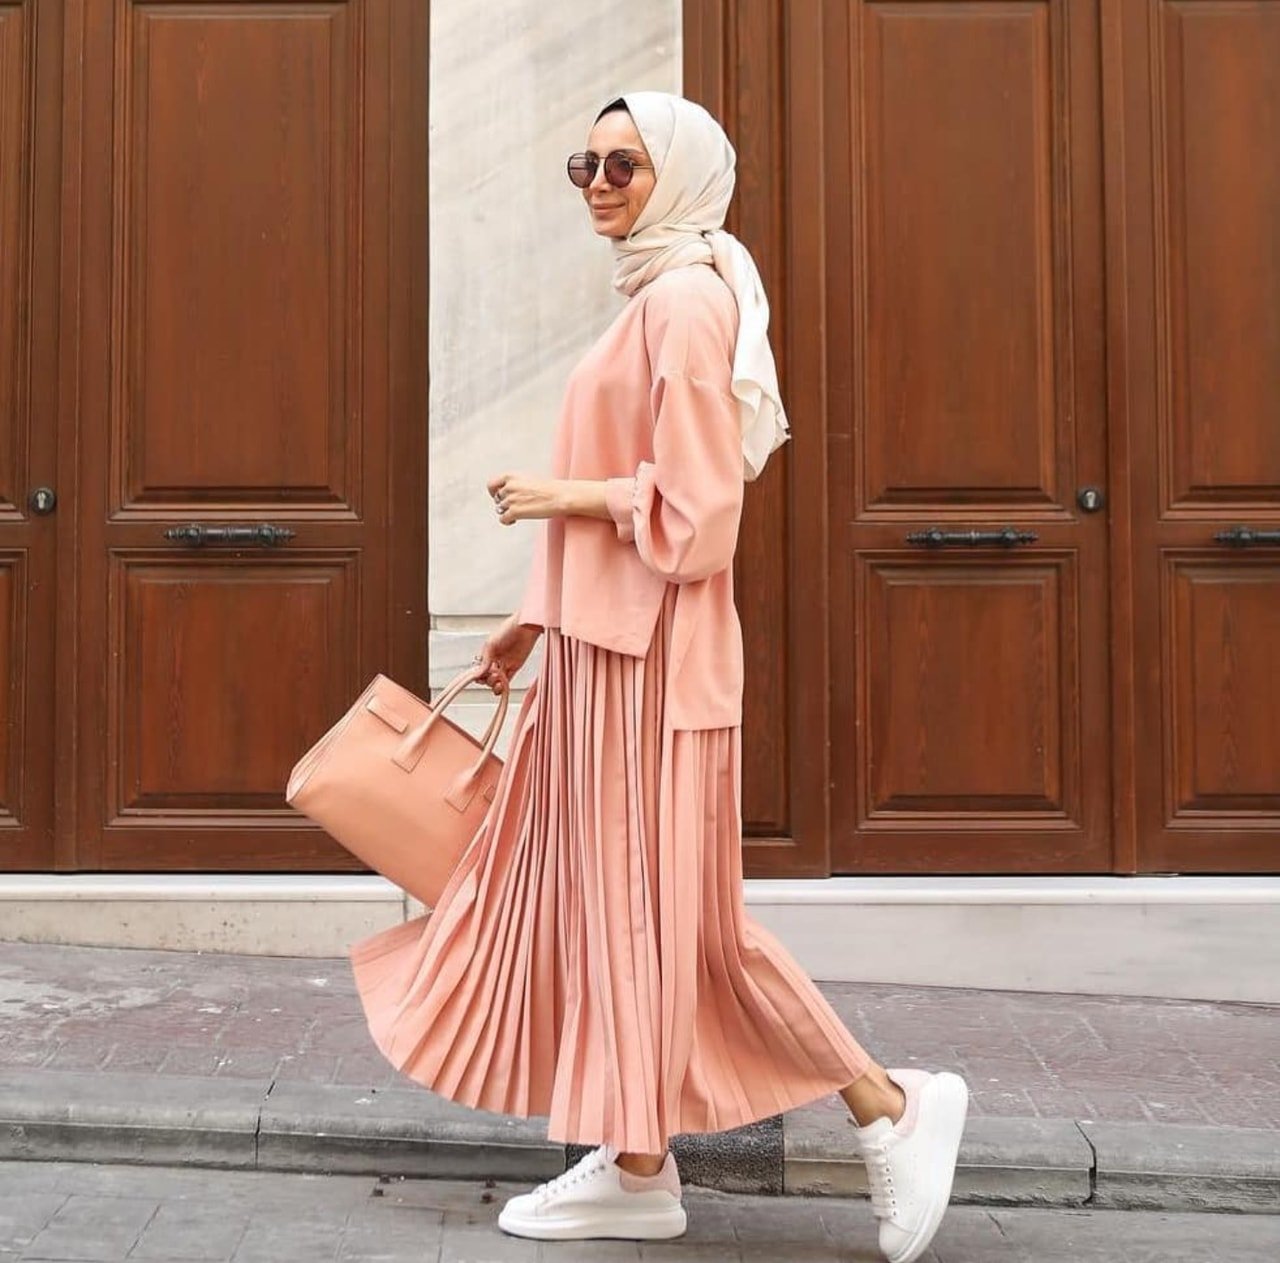 Мусульманская мода